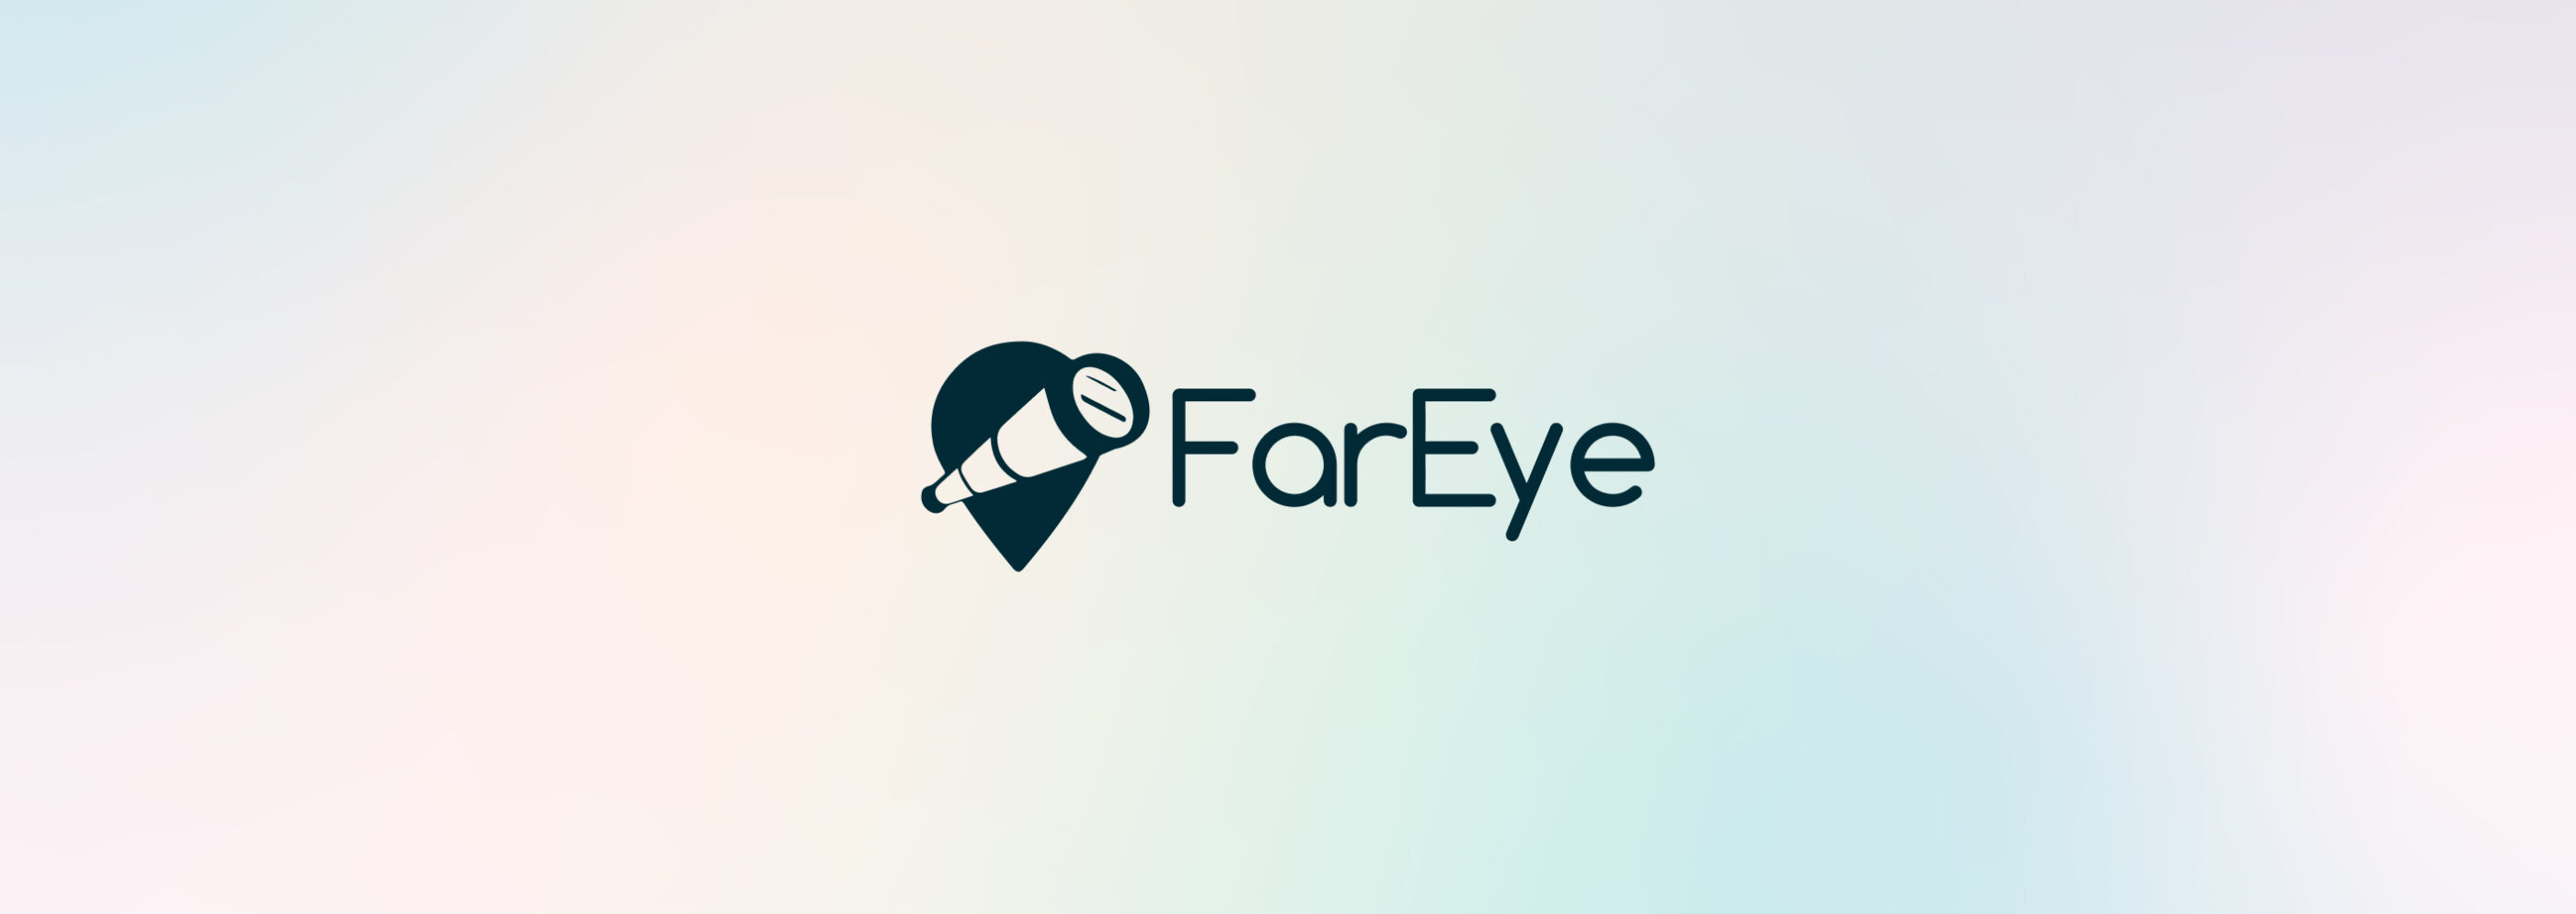 Far Eye Hero Desktop